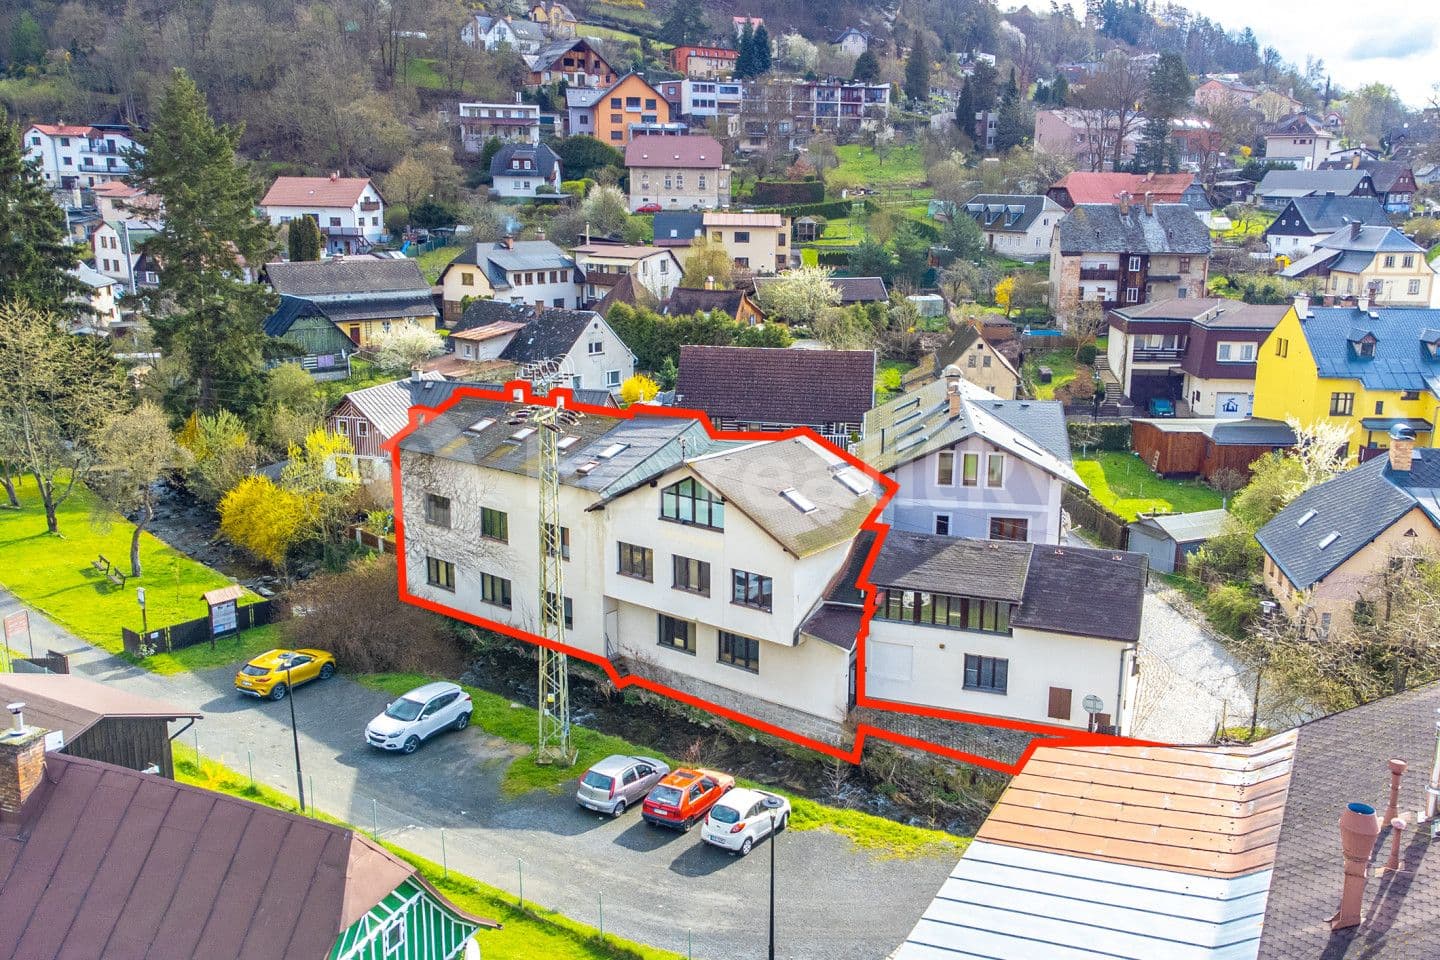 Prodej domu 399 m², pozemek 164 m², Jirchářská, Železný Brod, Liberecký kraj